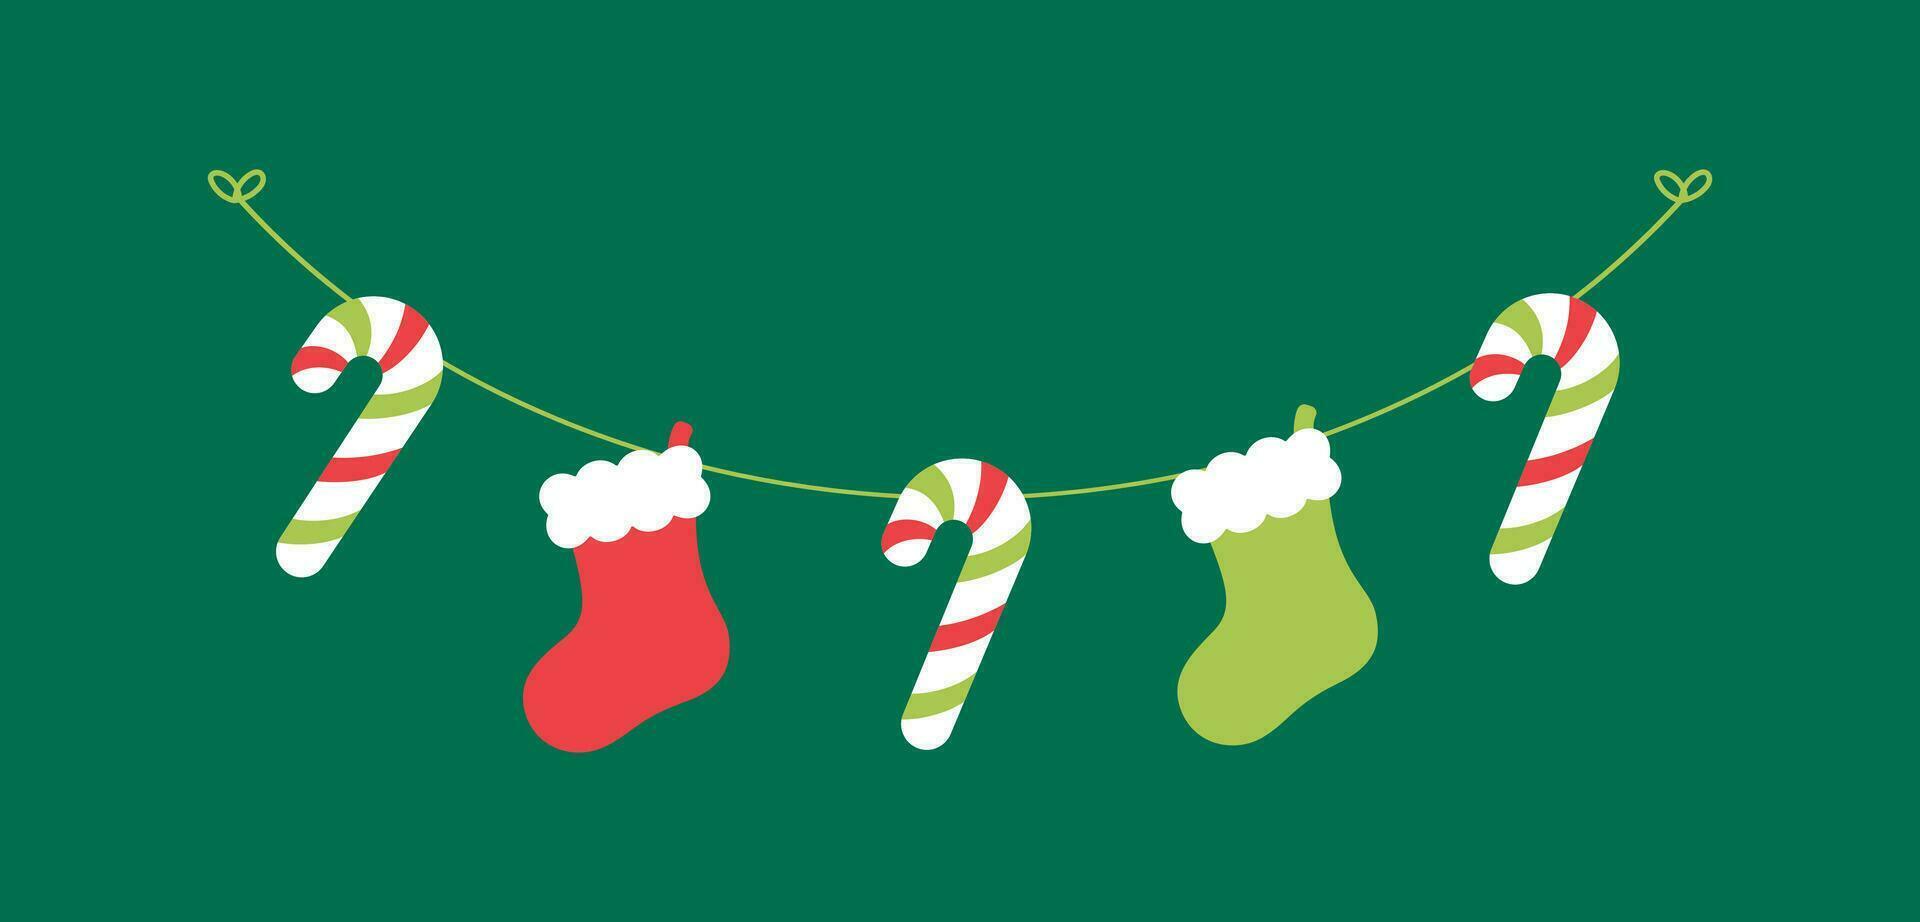 Kerstmis kous en snoep riet slinger vector illustratie, Kerstmis grafiek feestelijk winter vakantie seizoen vlaggedoek